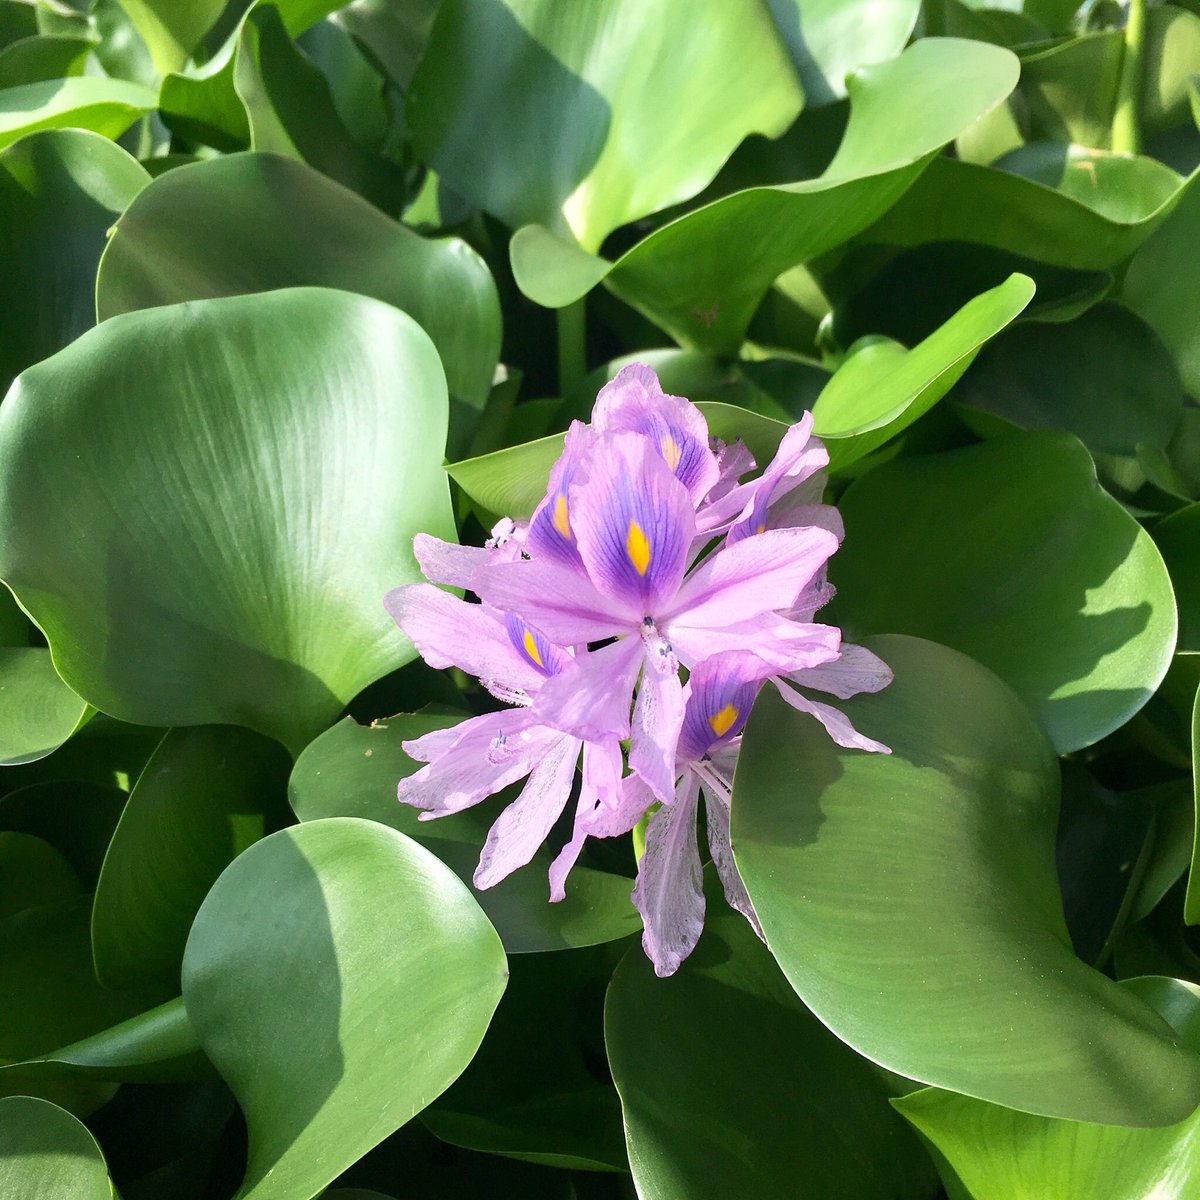 アクアトレンディ على تويتر おはようございます 本日もよろしくお願い致します 朝から屋外池で綺麗に咲く花に目がいきました アクアリウム 浮草 水草水槽 癒し空間 水中ガーデニング ホテイ草 ウォーターヒヤシンス 紫色の花 奈良県 大和郡山市 観賞魚